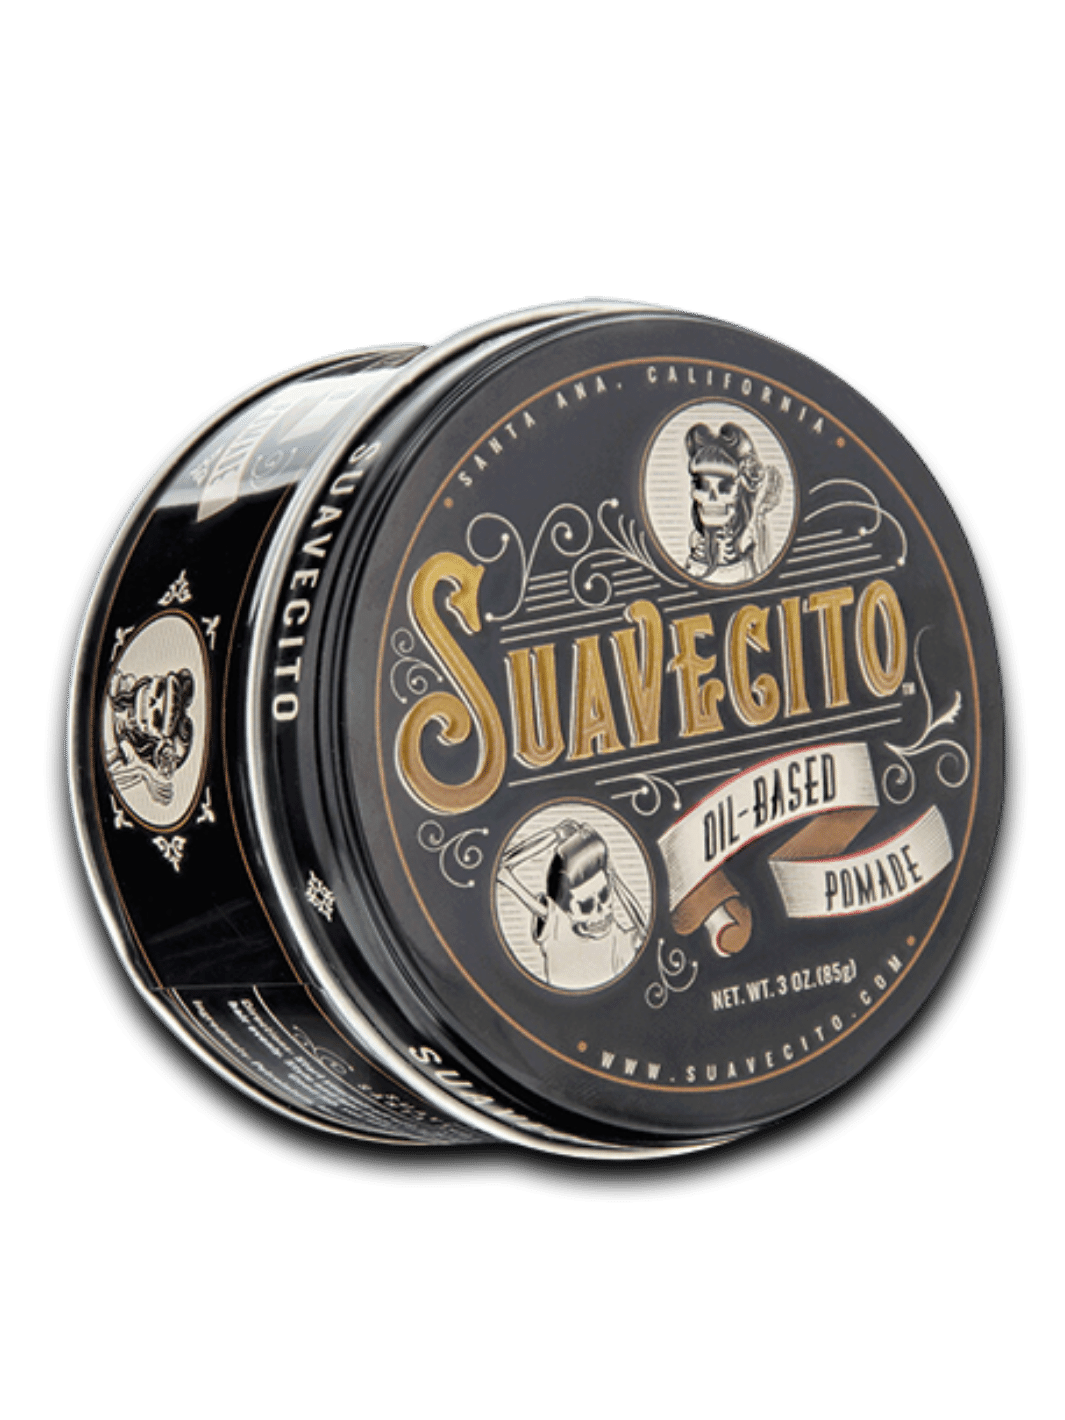 Suavecito Pomade auf Ölbasis, 85g Dose, bietet starken Halt und mittleren Glanz für klassische Frisuren, in einer charakteristischen schwarzen Dose mit dem Suavecito-Logo, erhältlich bei Phullcutz.